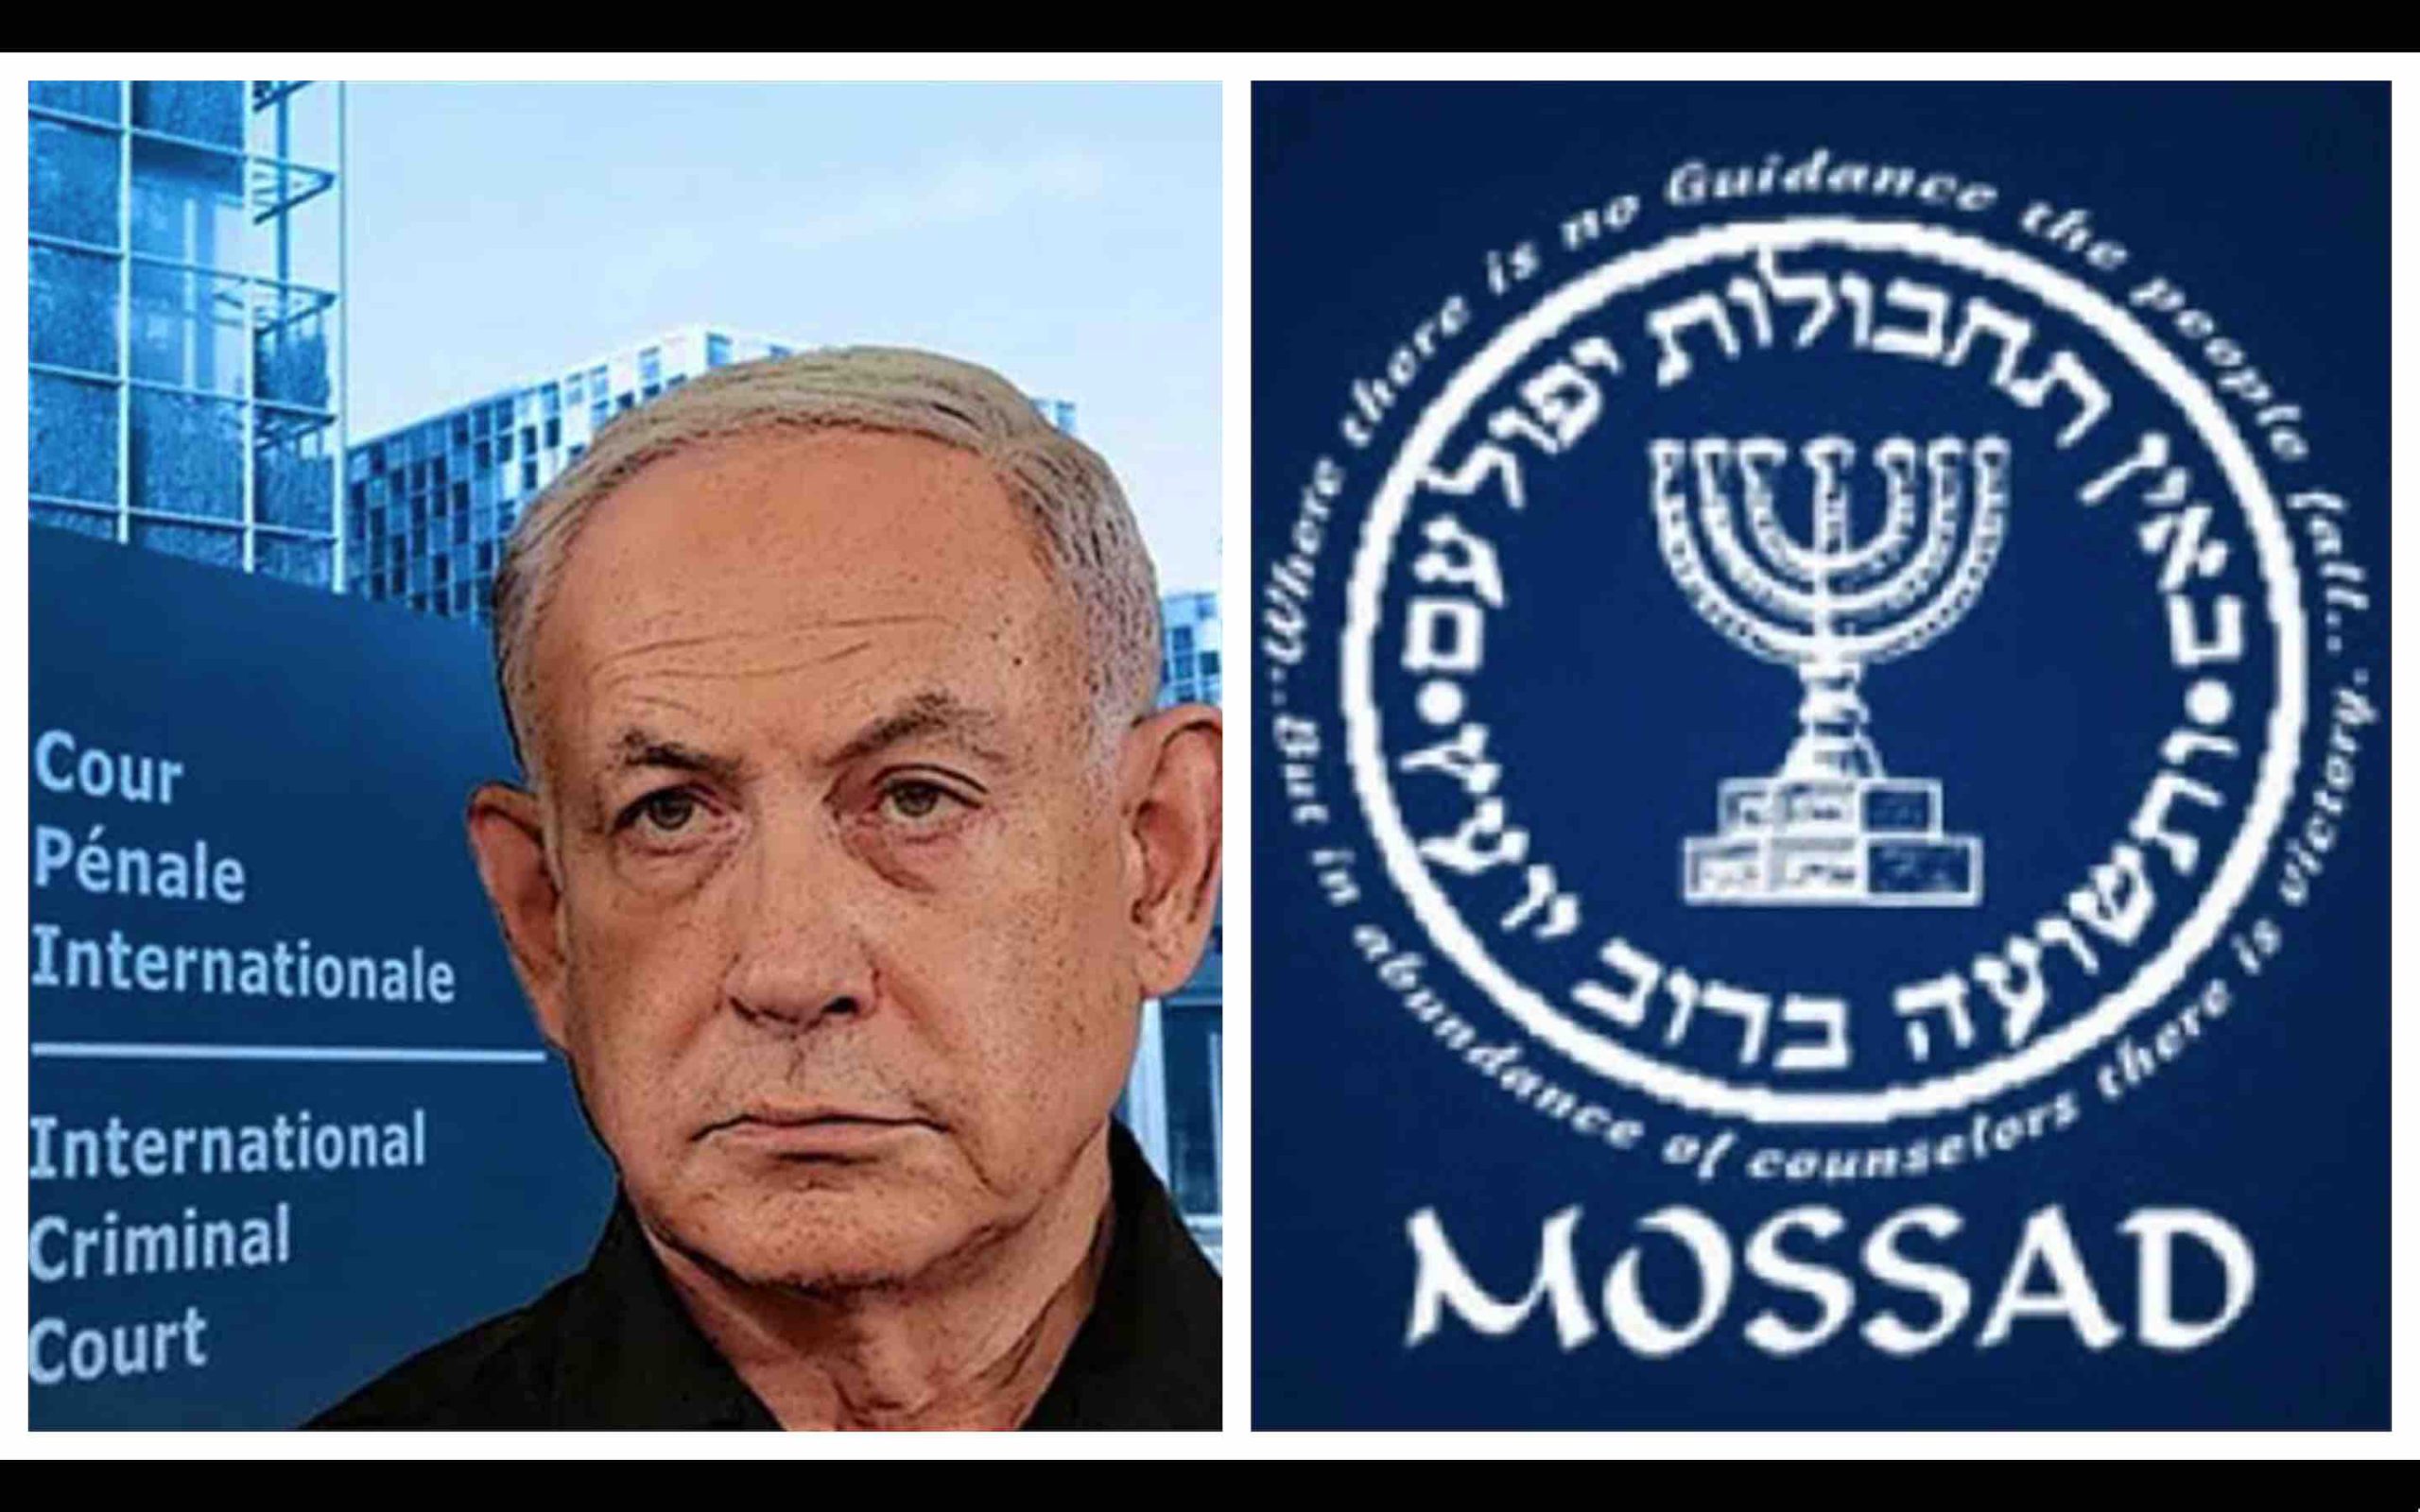 Mossad CPI Benyamin Netanyahou Israël Fatou Bensouda procureure générale de la Cour pénale internationale